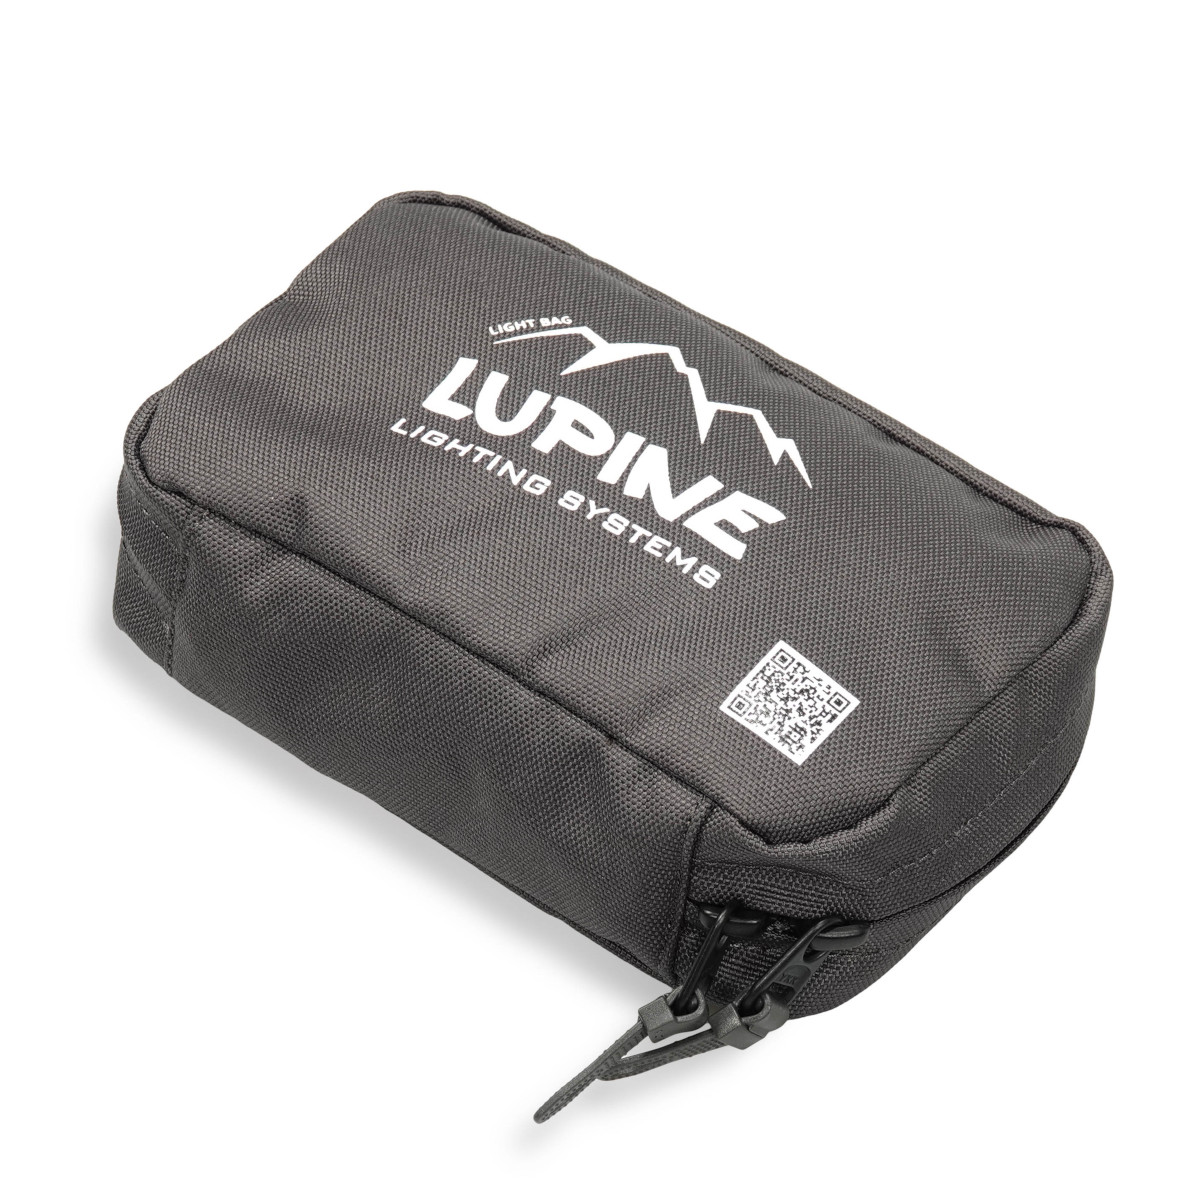 Produktbild von Lupine Light Bag - Lampentasche